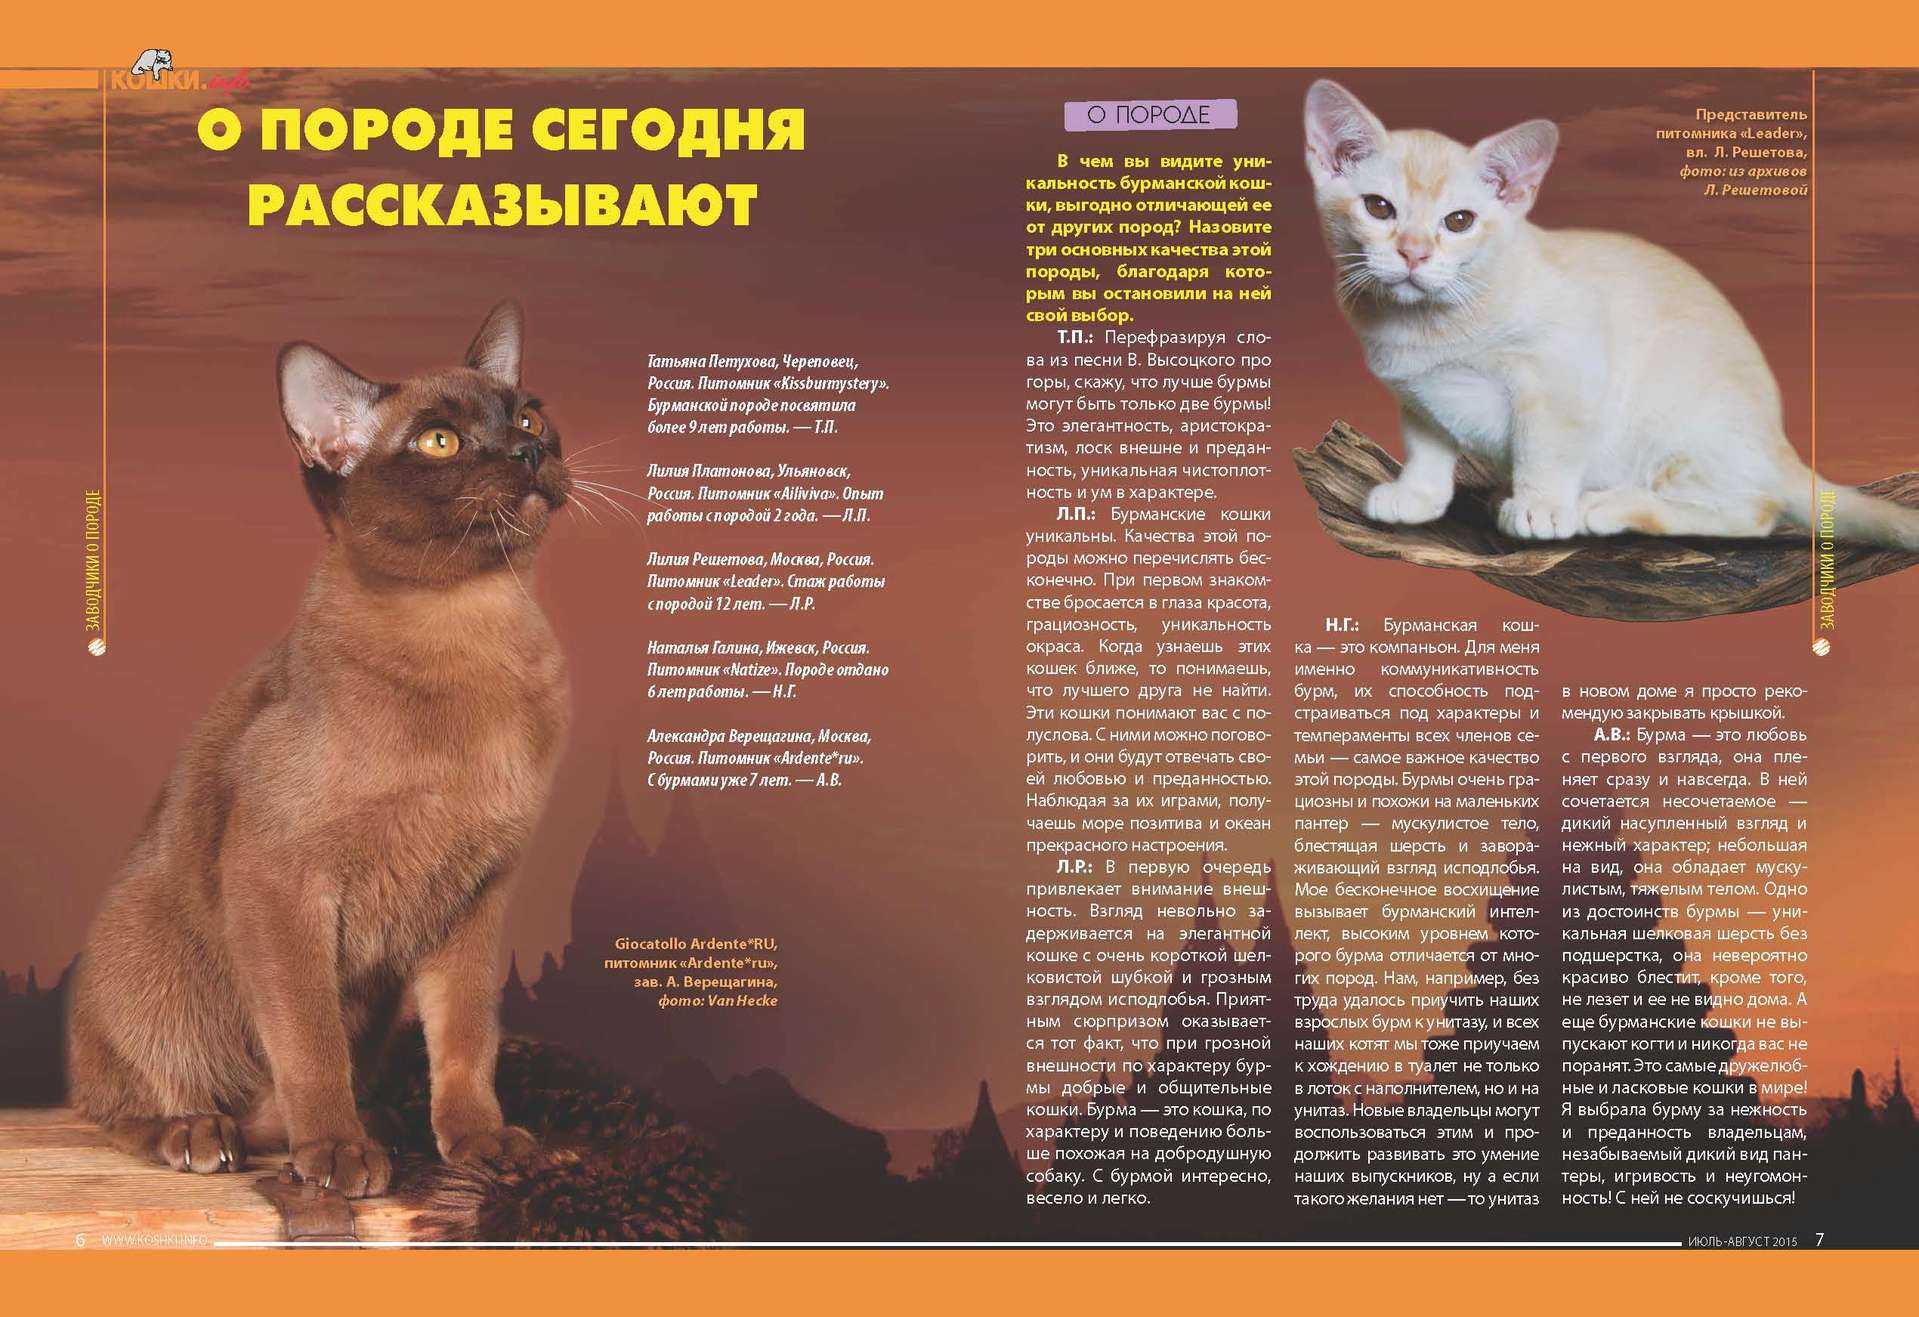 Цейлонская кошка – интересные факты о породе